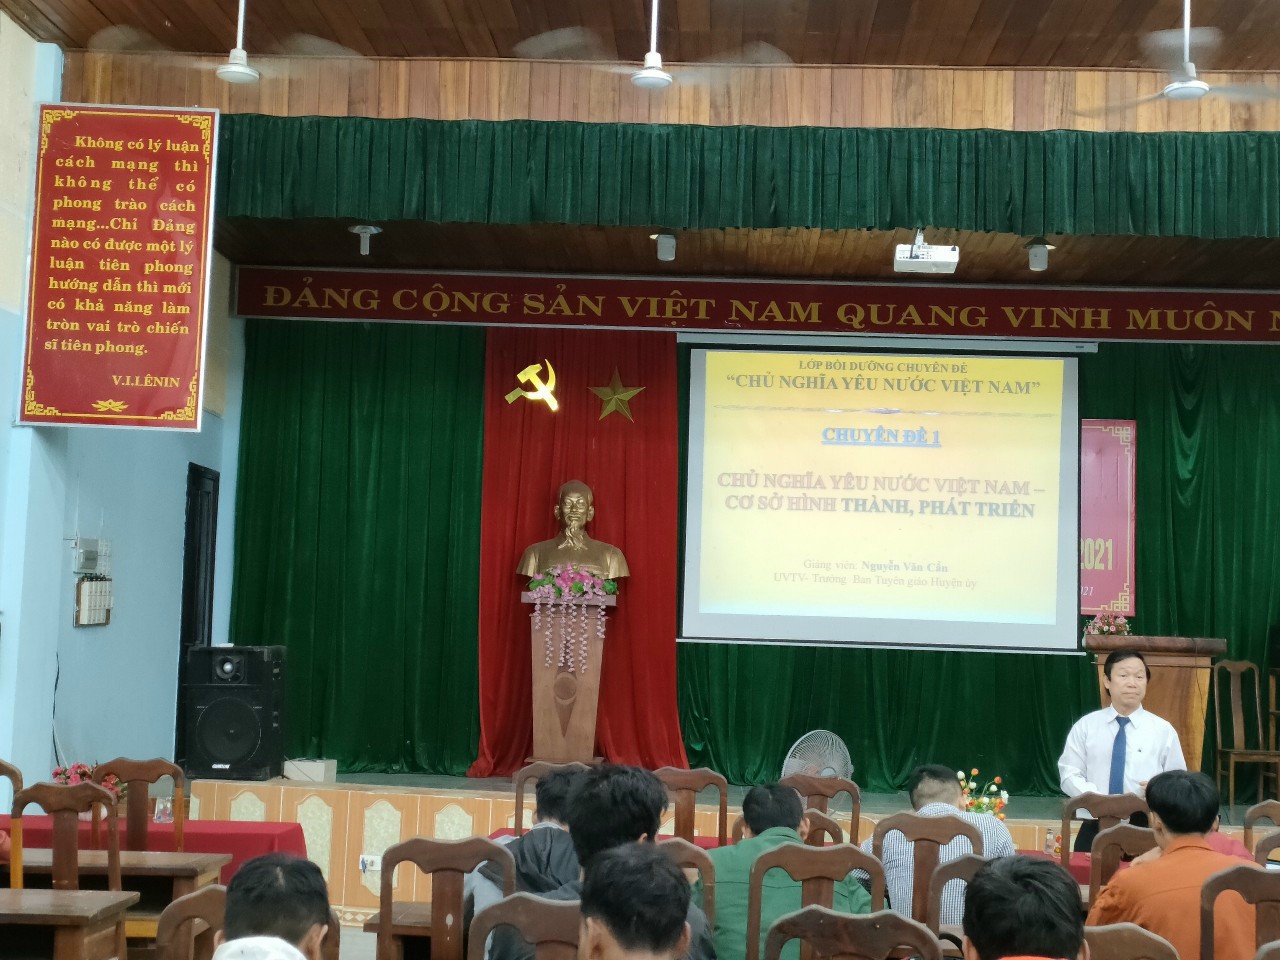 Khai giảng lớp bồi dưỡng chuyên đề về chủ nghĩa yêu nước Việt Nam cho 70 bí thư chi đoàn cơ sở